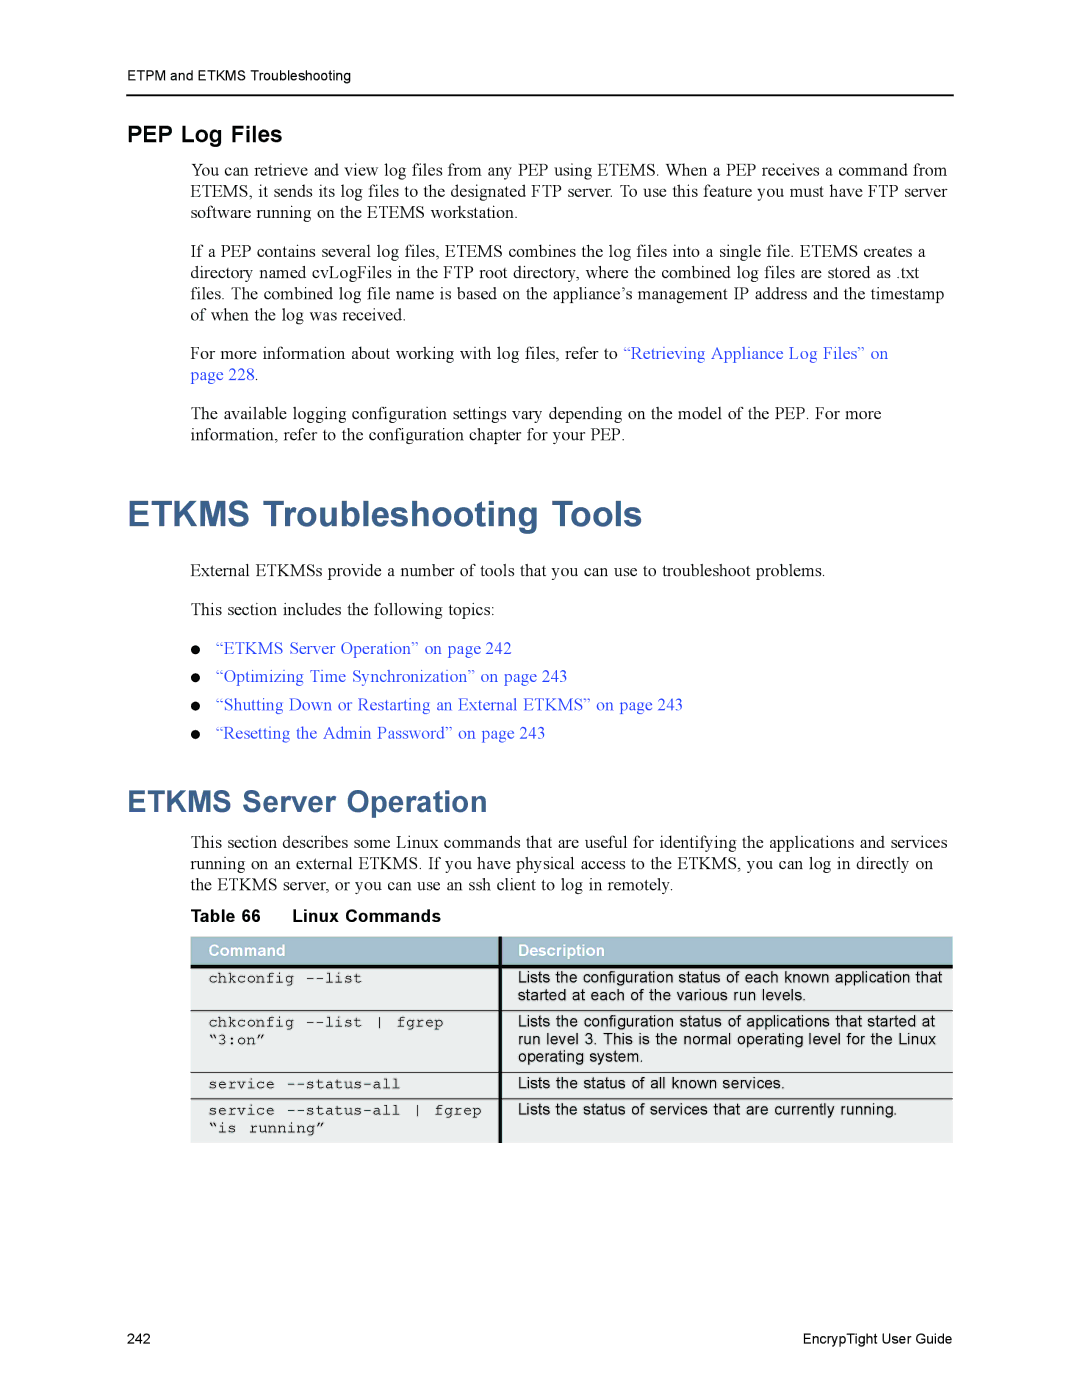 Black Box ET0010A Etkms Troubleshooting Tools, Etkms Server Operation, PEP Log Files, Linux Commands, Command Description 